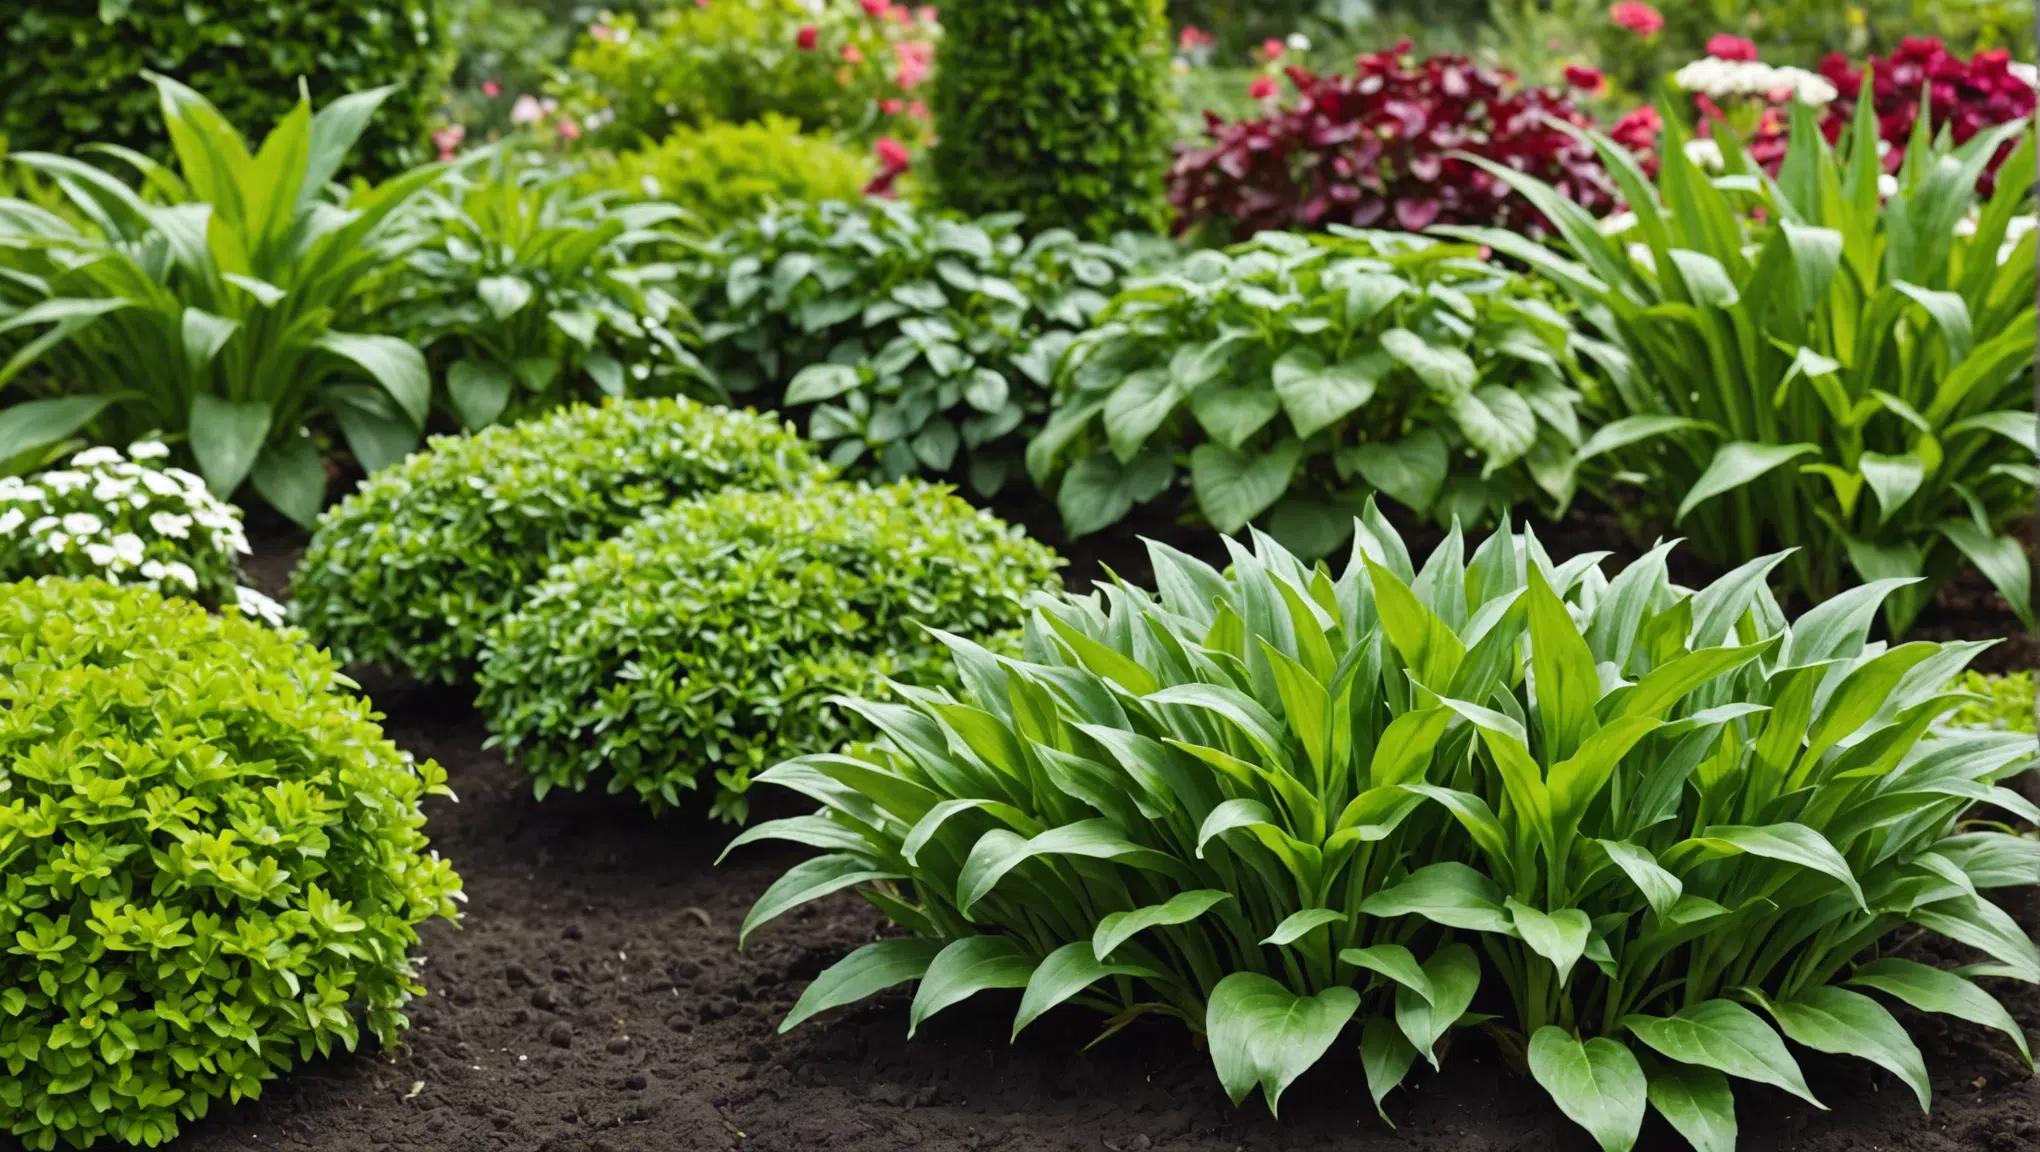 découvrez les meilleurs engrais naturels pour votre jardin et optimisez votre récolte avec nos conseils d'experts.